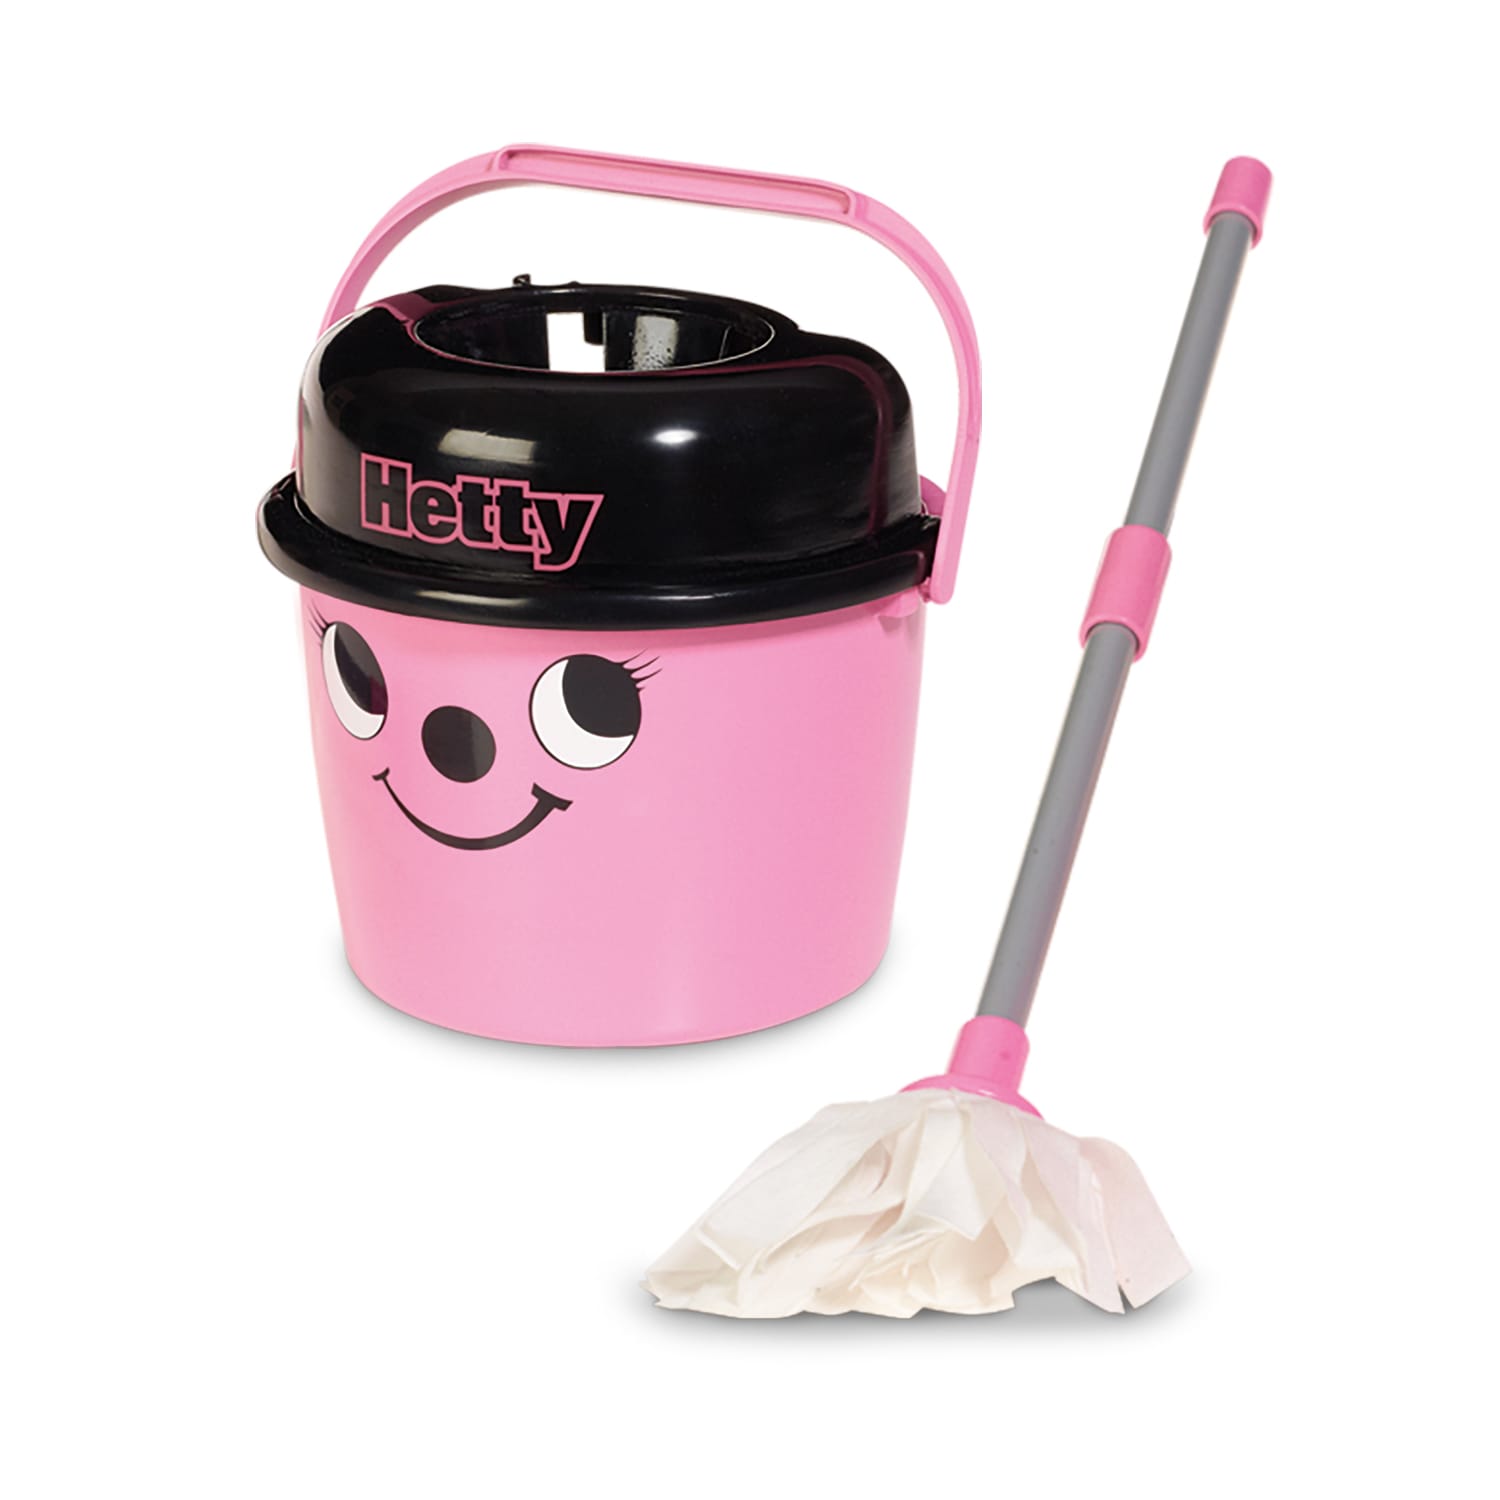 Casdon HETTY MOP & BUCKET Pretend Household Cleaning Play Pre-School Toy BNIP 